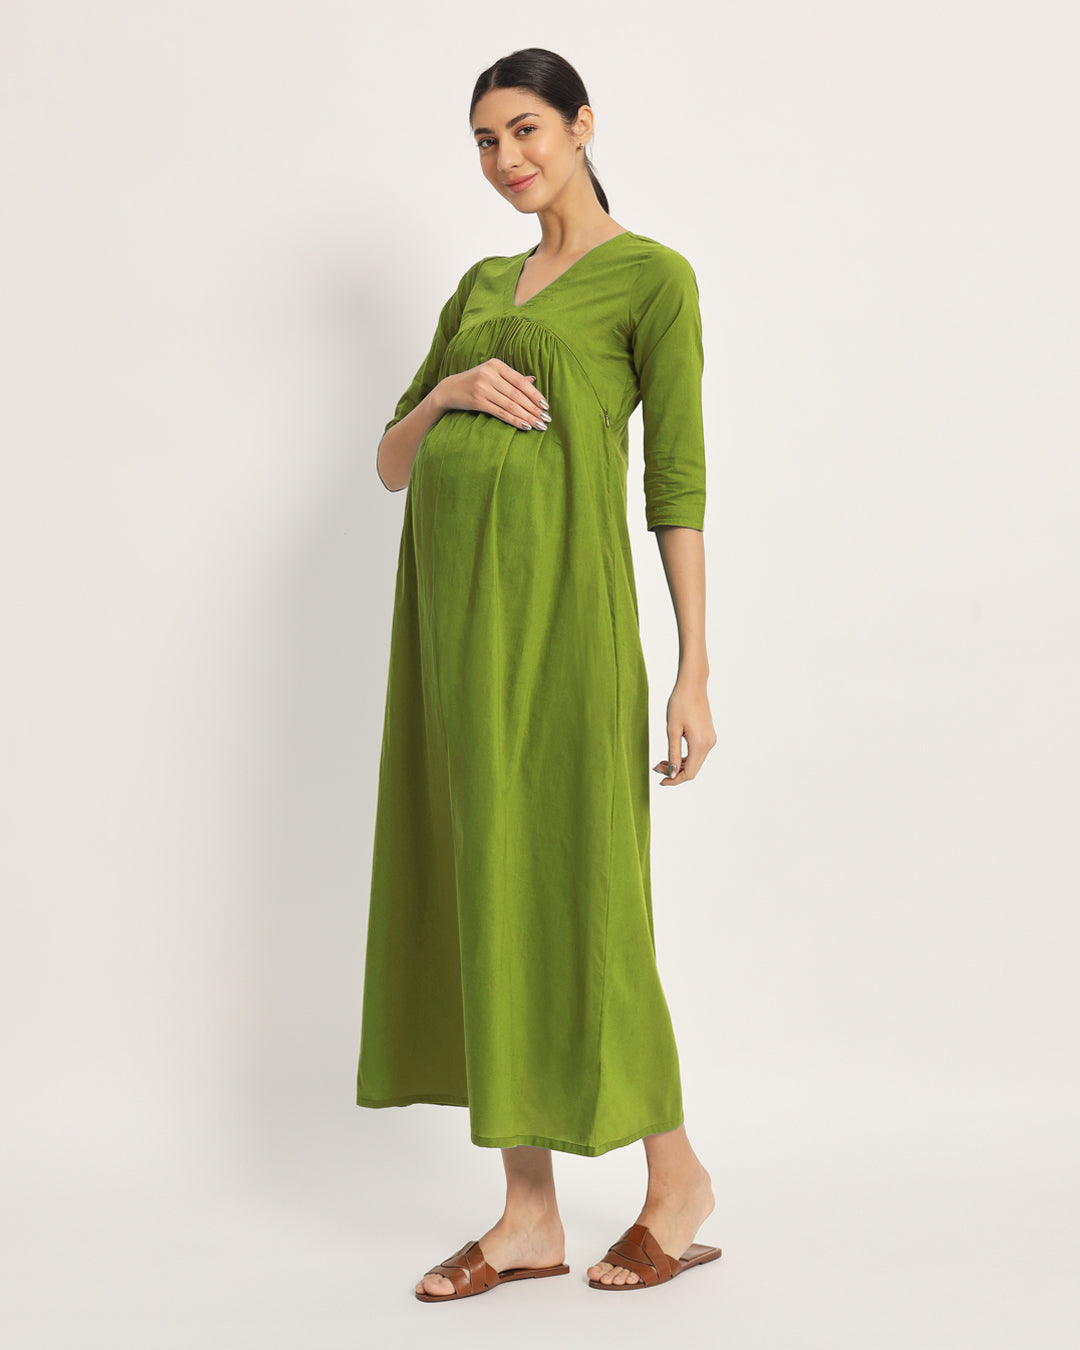 Combo: Lilac & Sage Green Bump Comfort Maternity & Nursing Dress - Set of 2